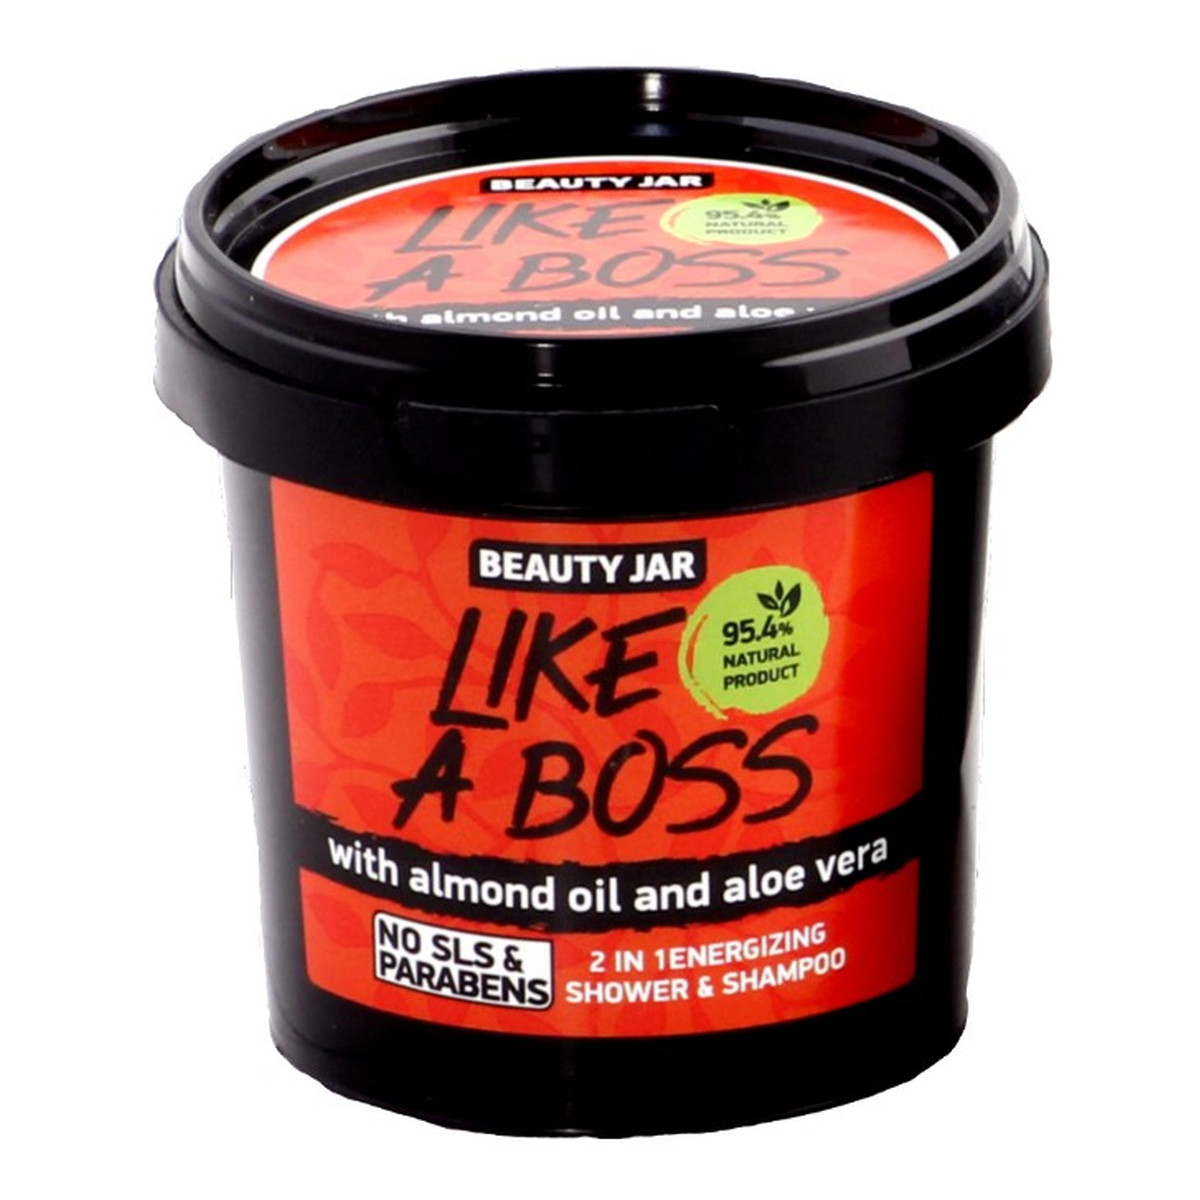 Beauty Jar LIKE A BOSS energetyzujący żel pod prysznic & szampon 2in1 150g